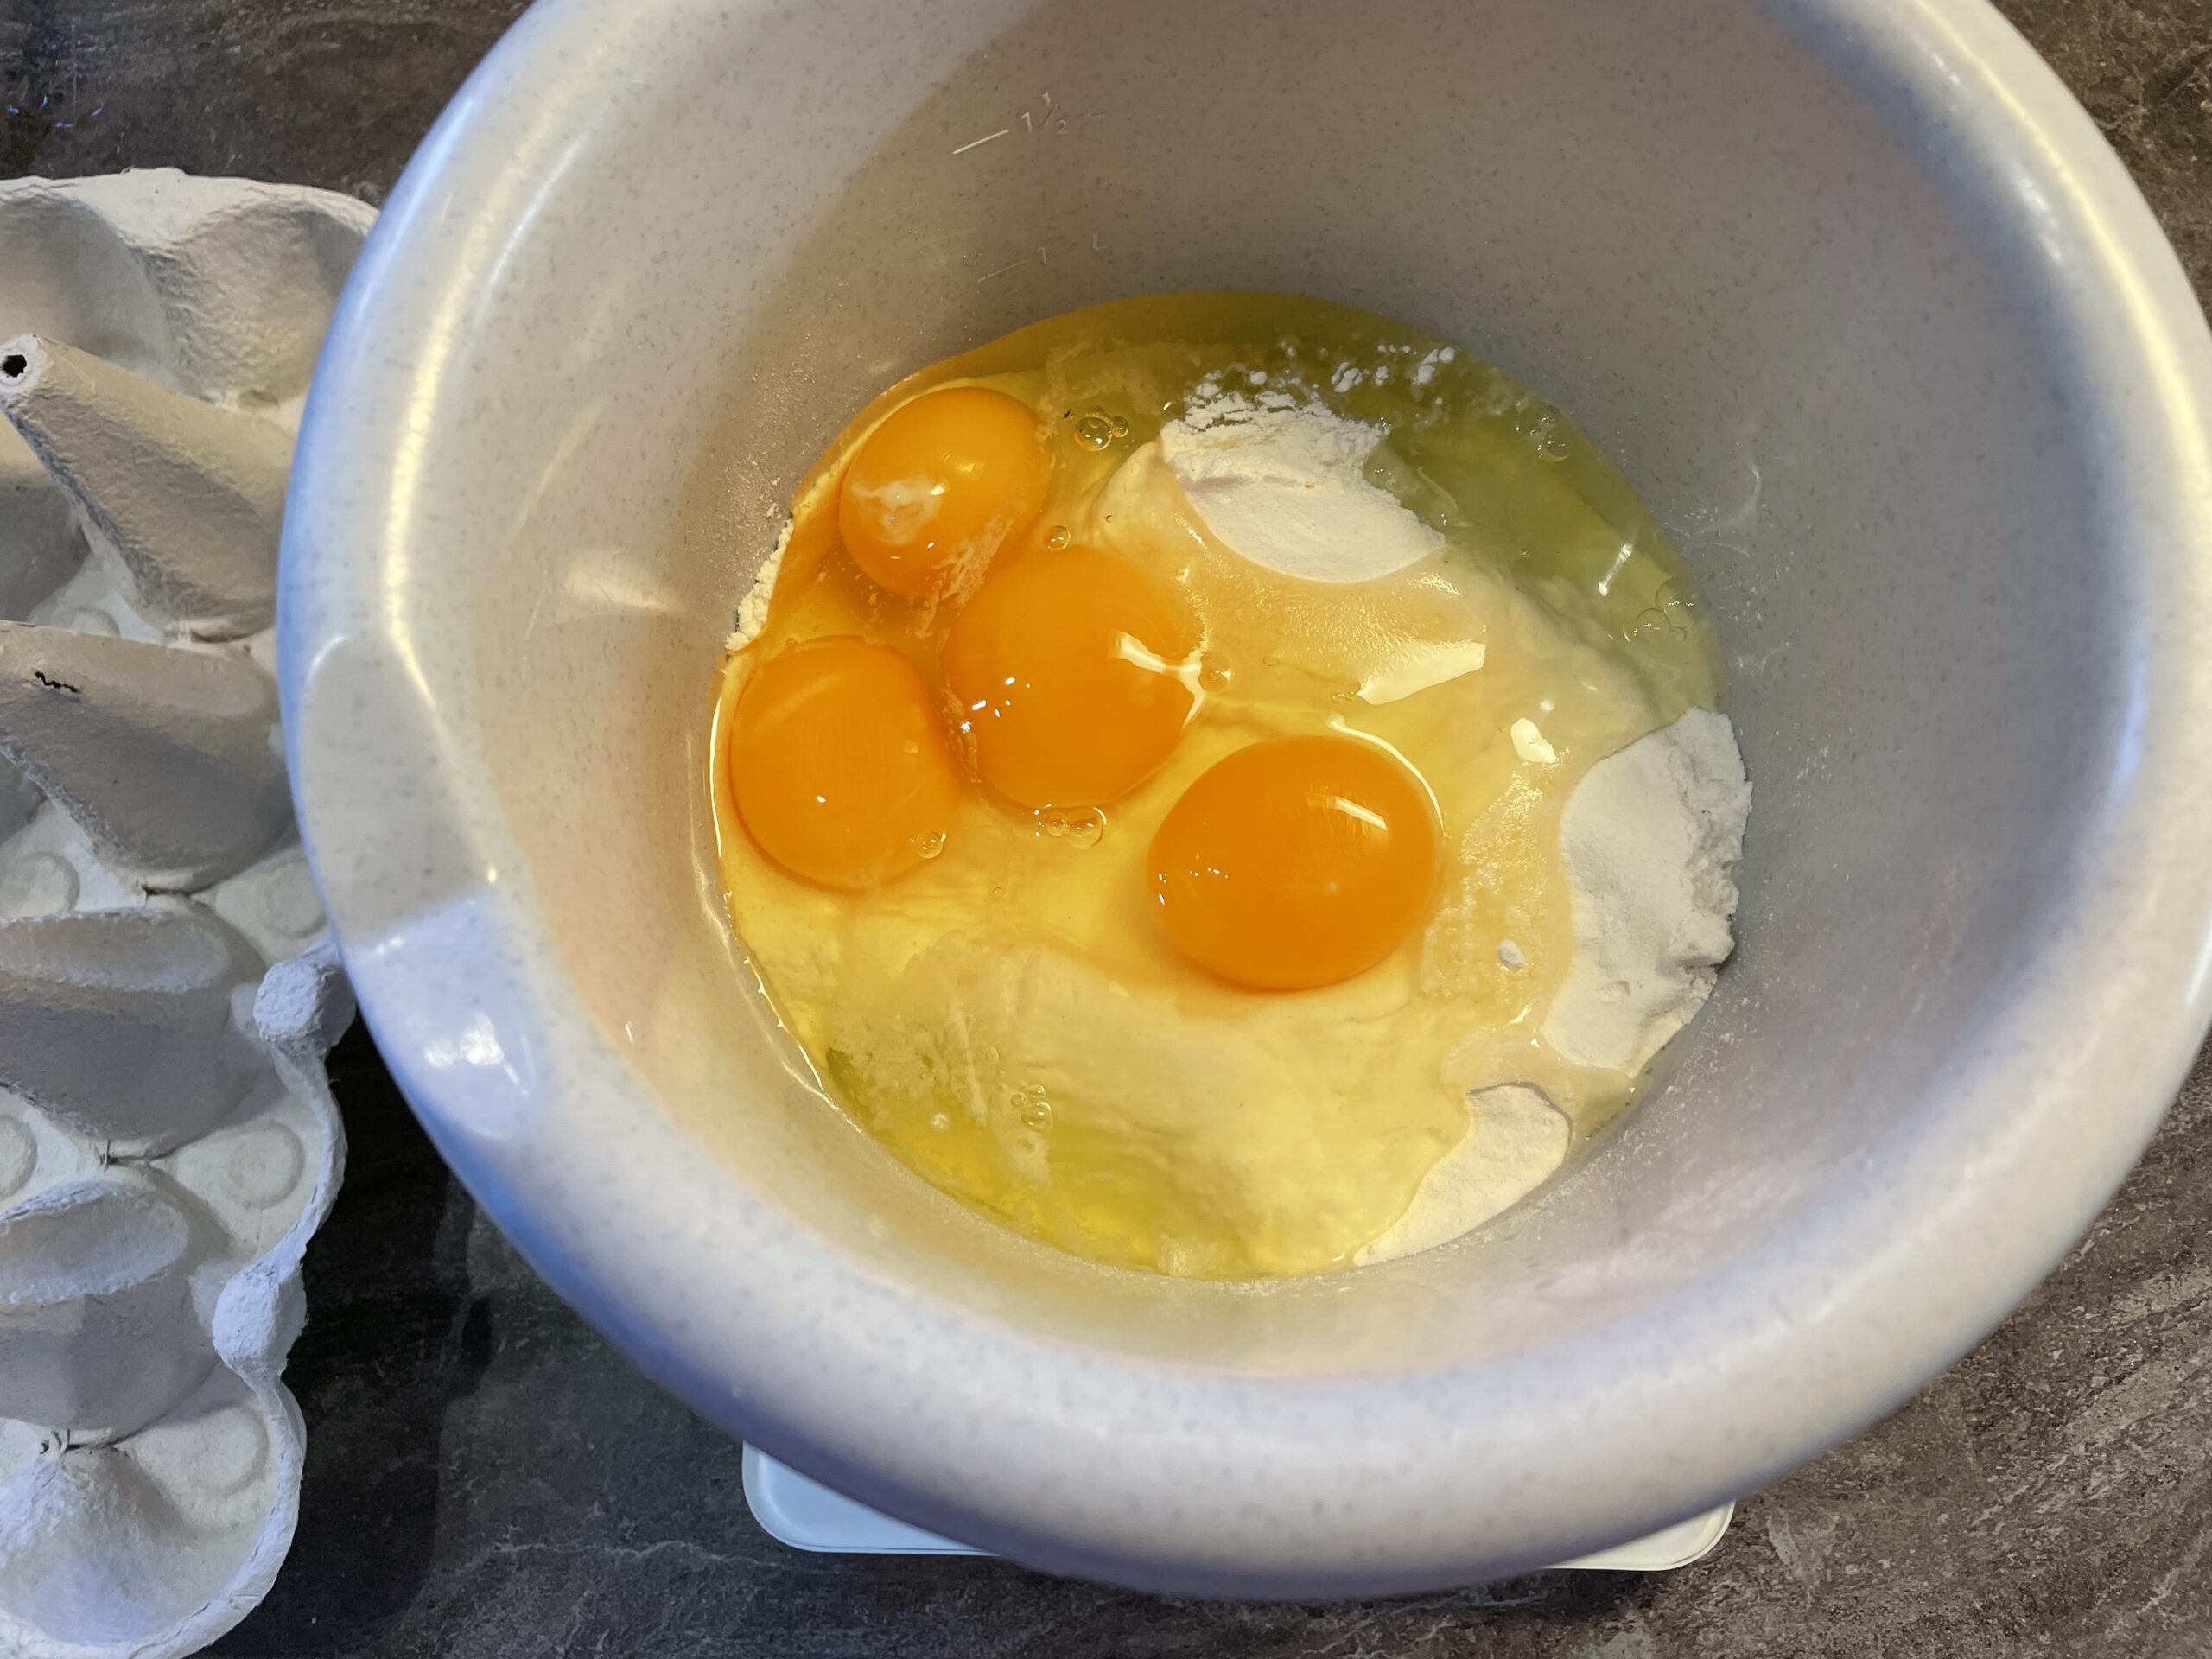 Bild zum Schritt 4 für das Bastel- und DIY-Abenteuer für Kinder: 'Die vier Eier gebt ihr in die Schüssel zum Mehl.'